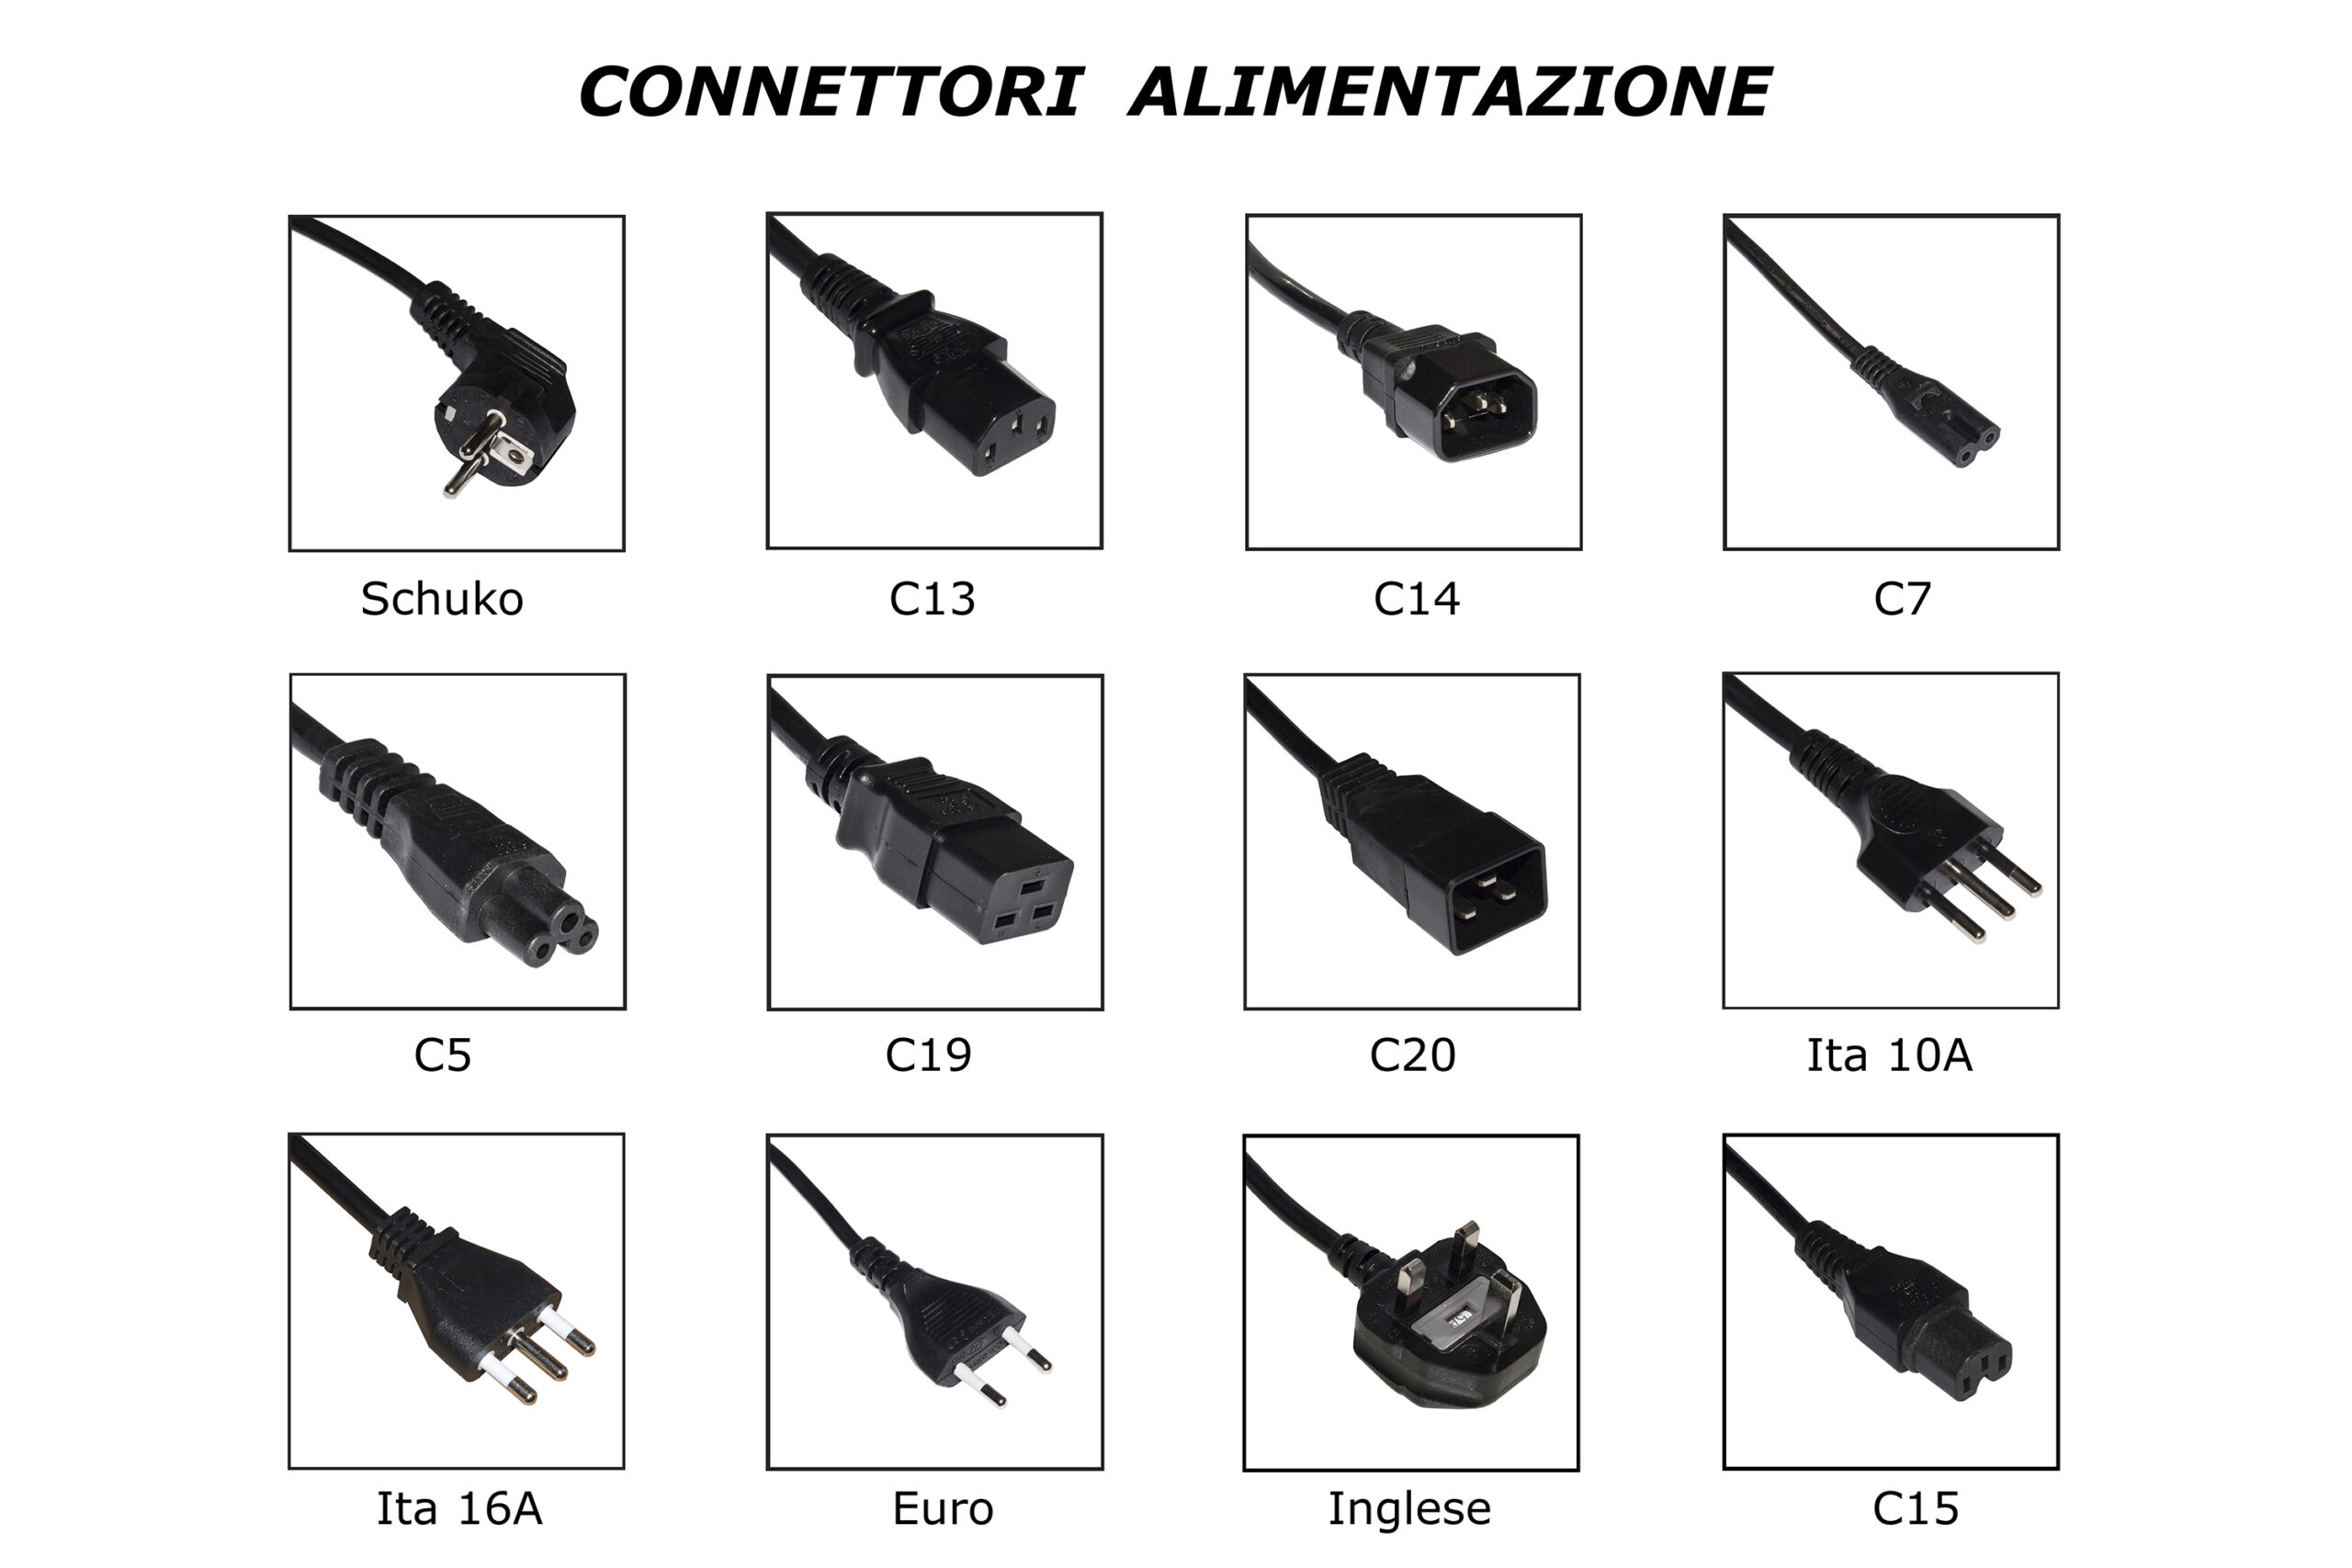 CAVO ALIMENTAZIONE SPINA ITALIANA TRIPOLARE 10 A. PER COMPUTER, STAMPANTI ECC. MT. 1.8